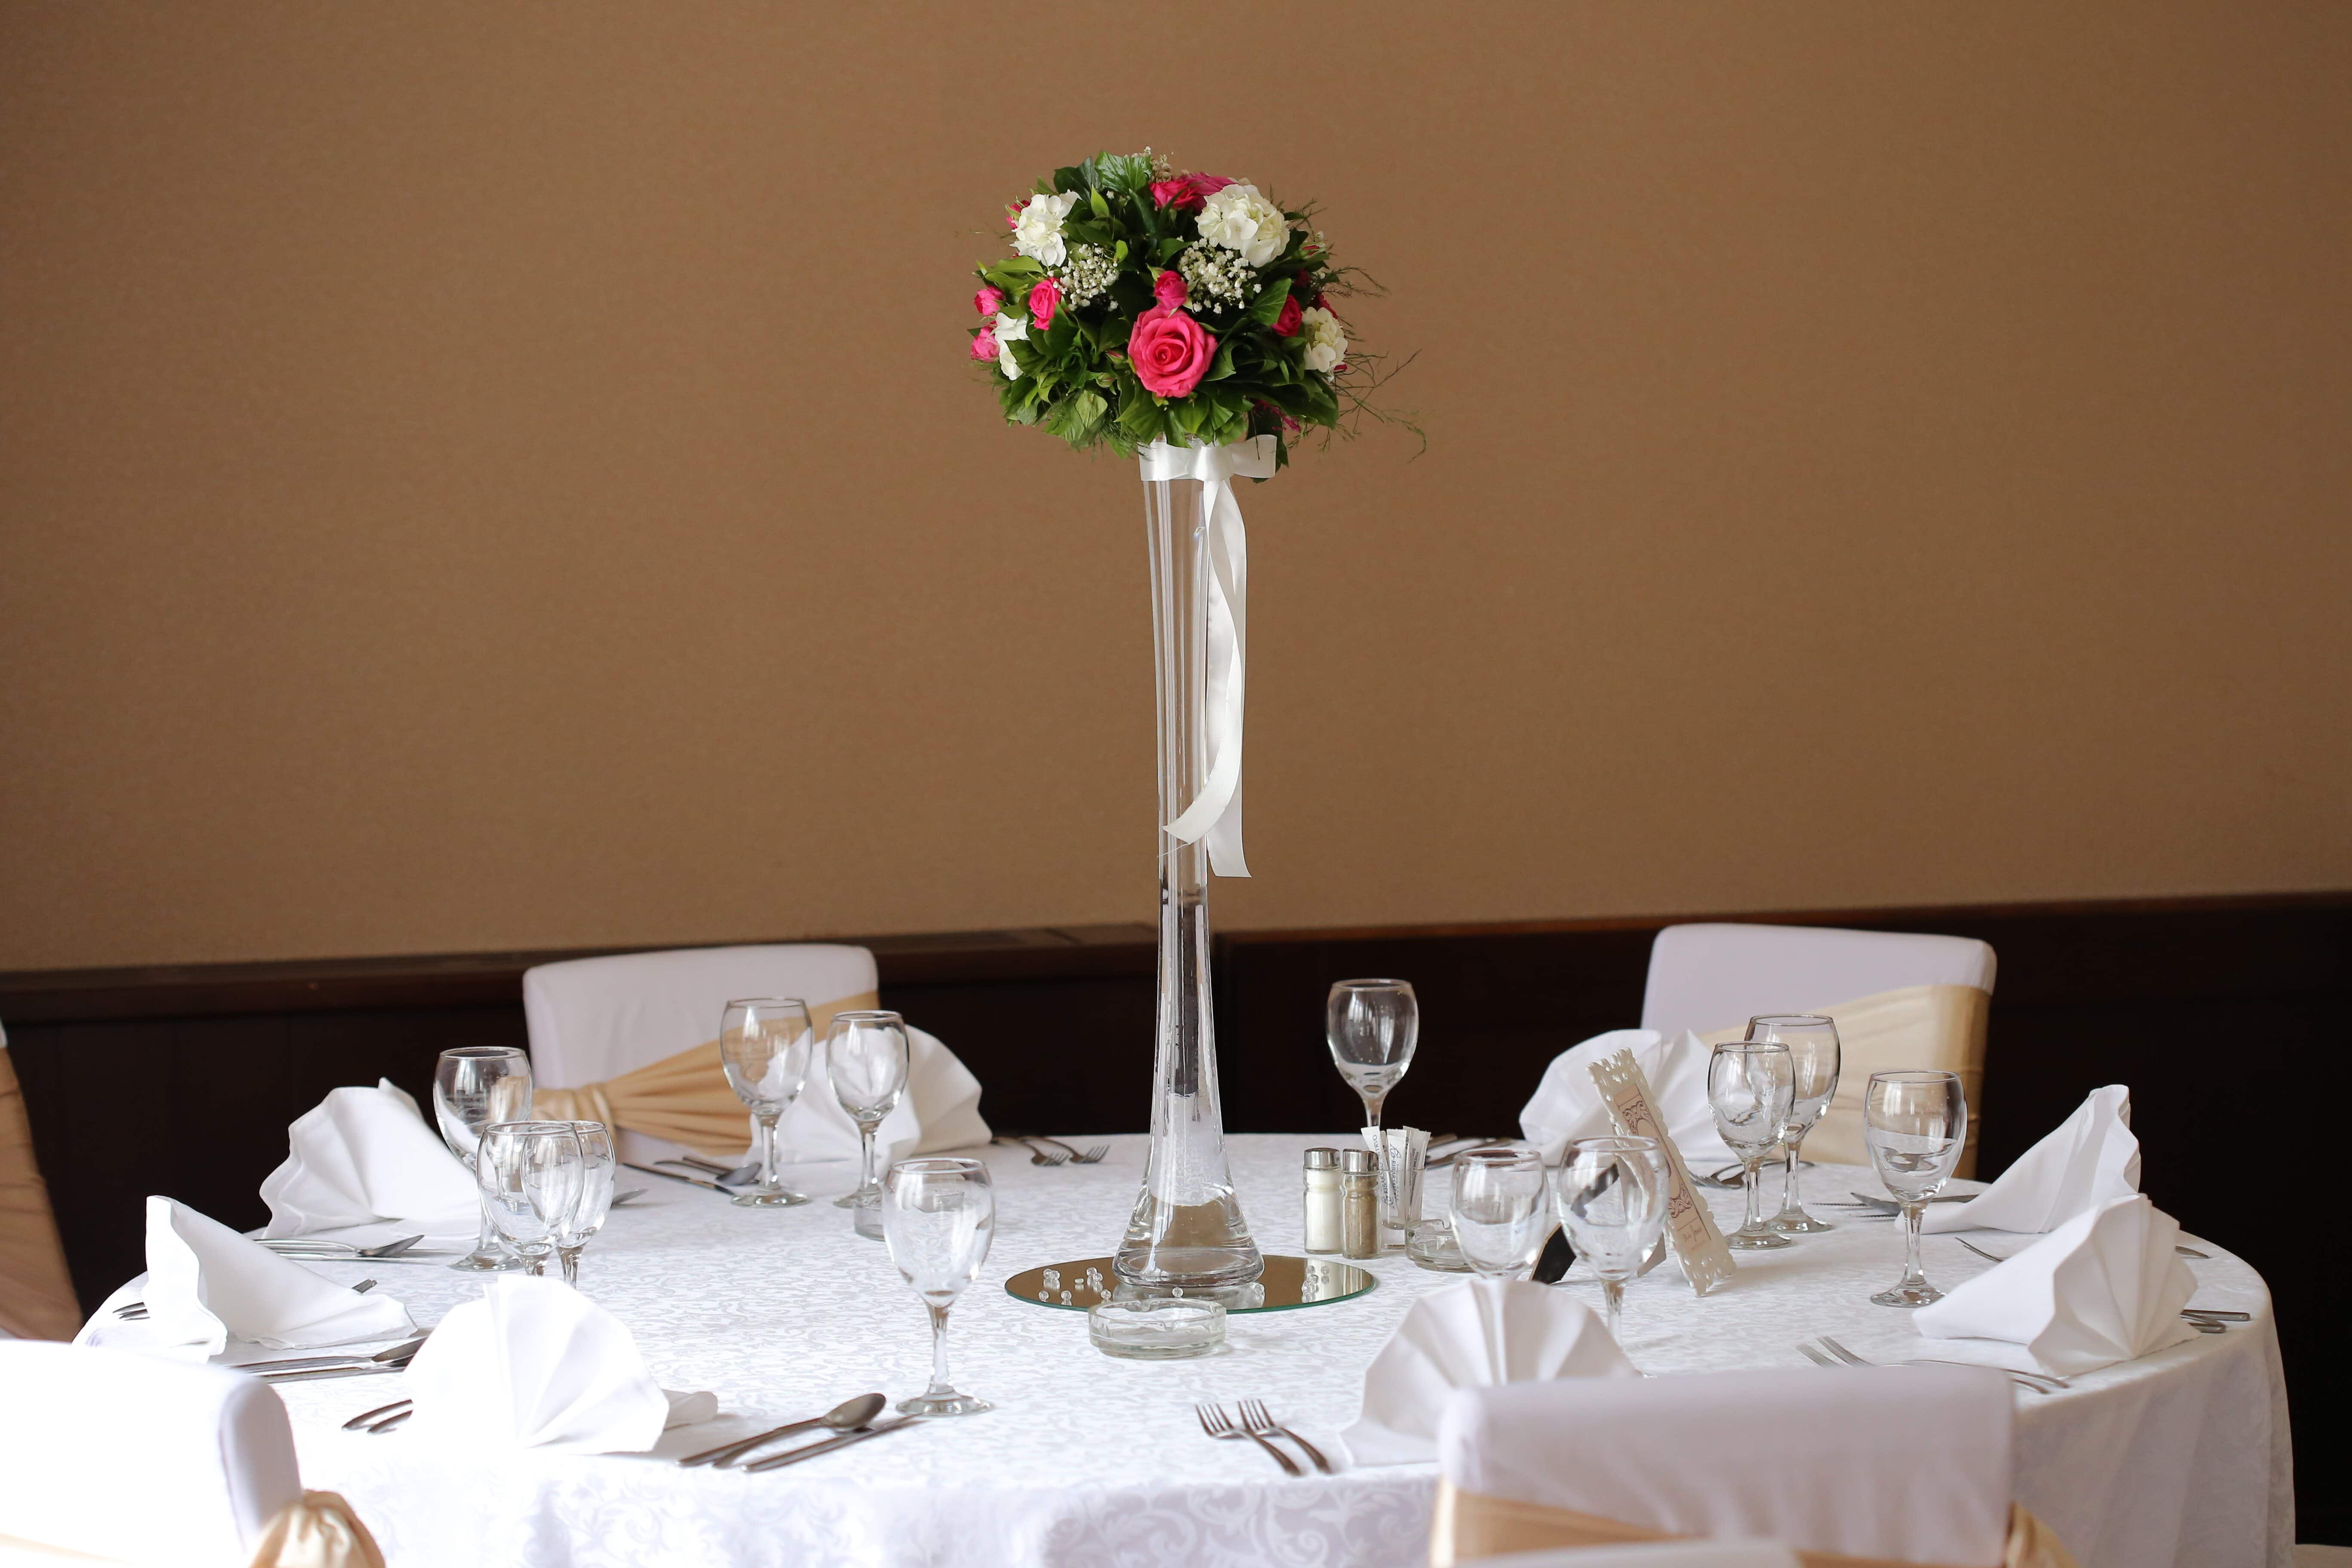 フリー写真画像 花瓶 ウェディングブーケ 夕食のテーブル ナプキン 部屋 結婚式 インテリア 家具 テーブル 花